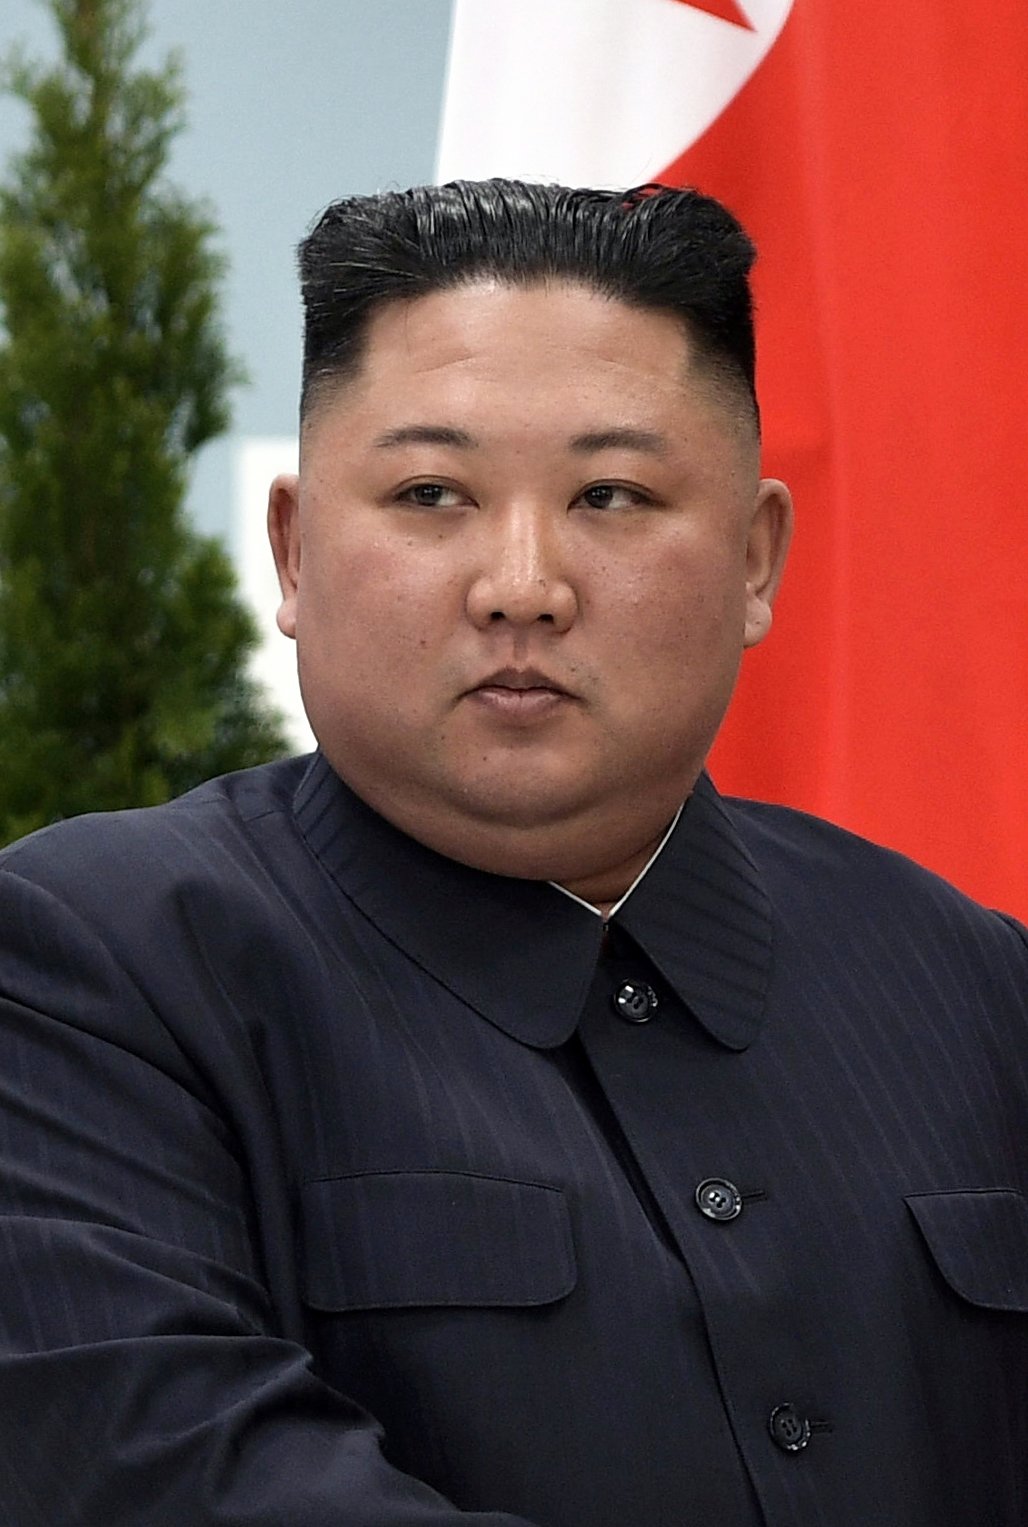 Kim Jong-un, el niño mimado que se convirtió en un tirano paranoico